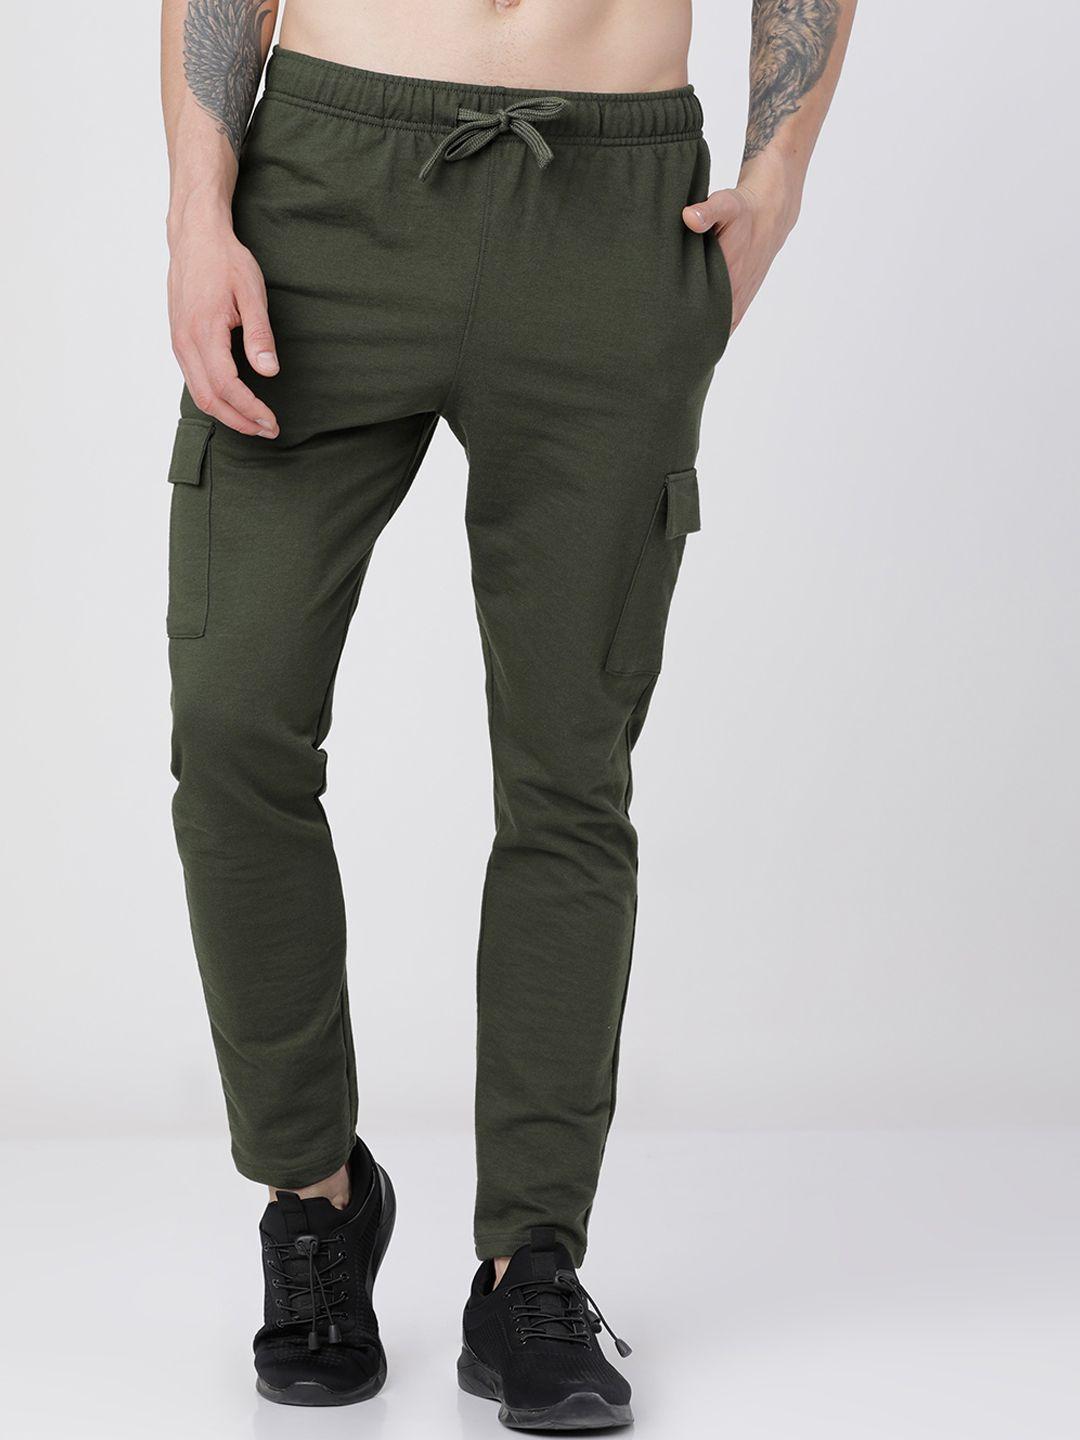 highlander-men-olive-green-solid-slim-fit-track-pants